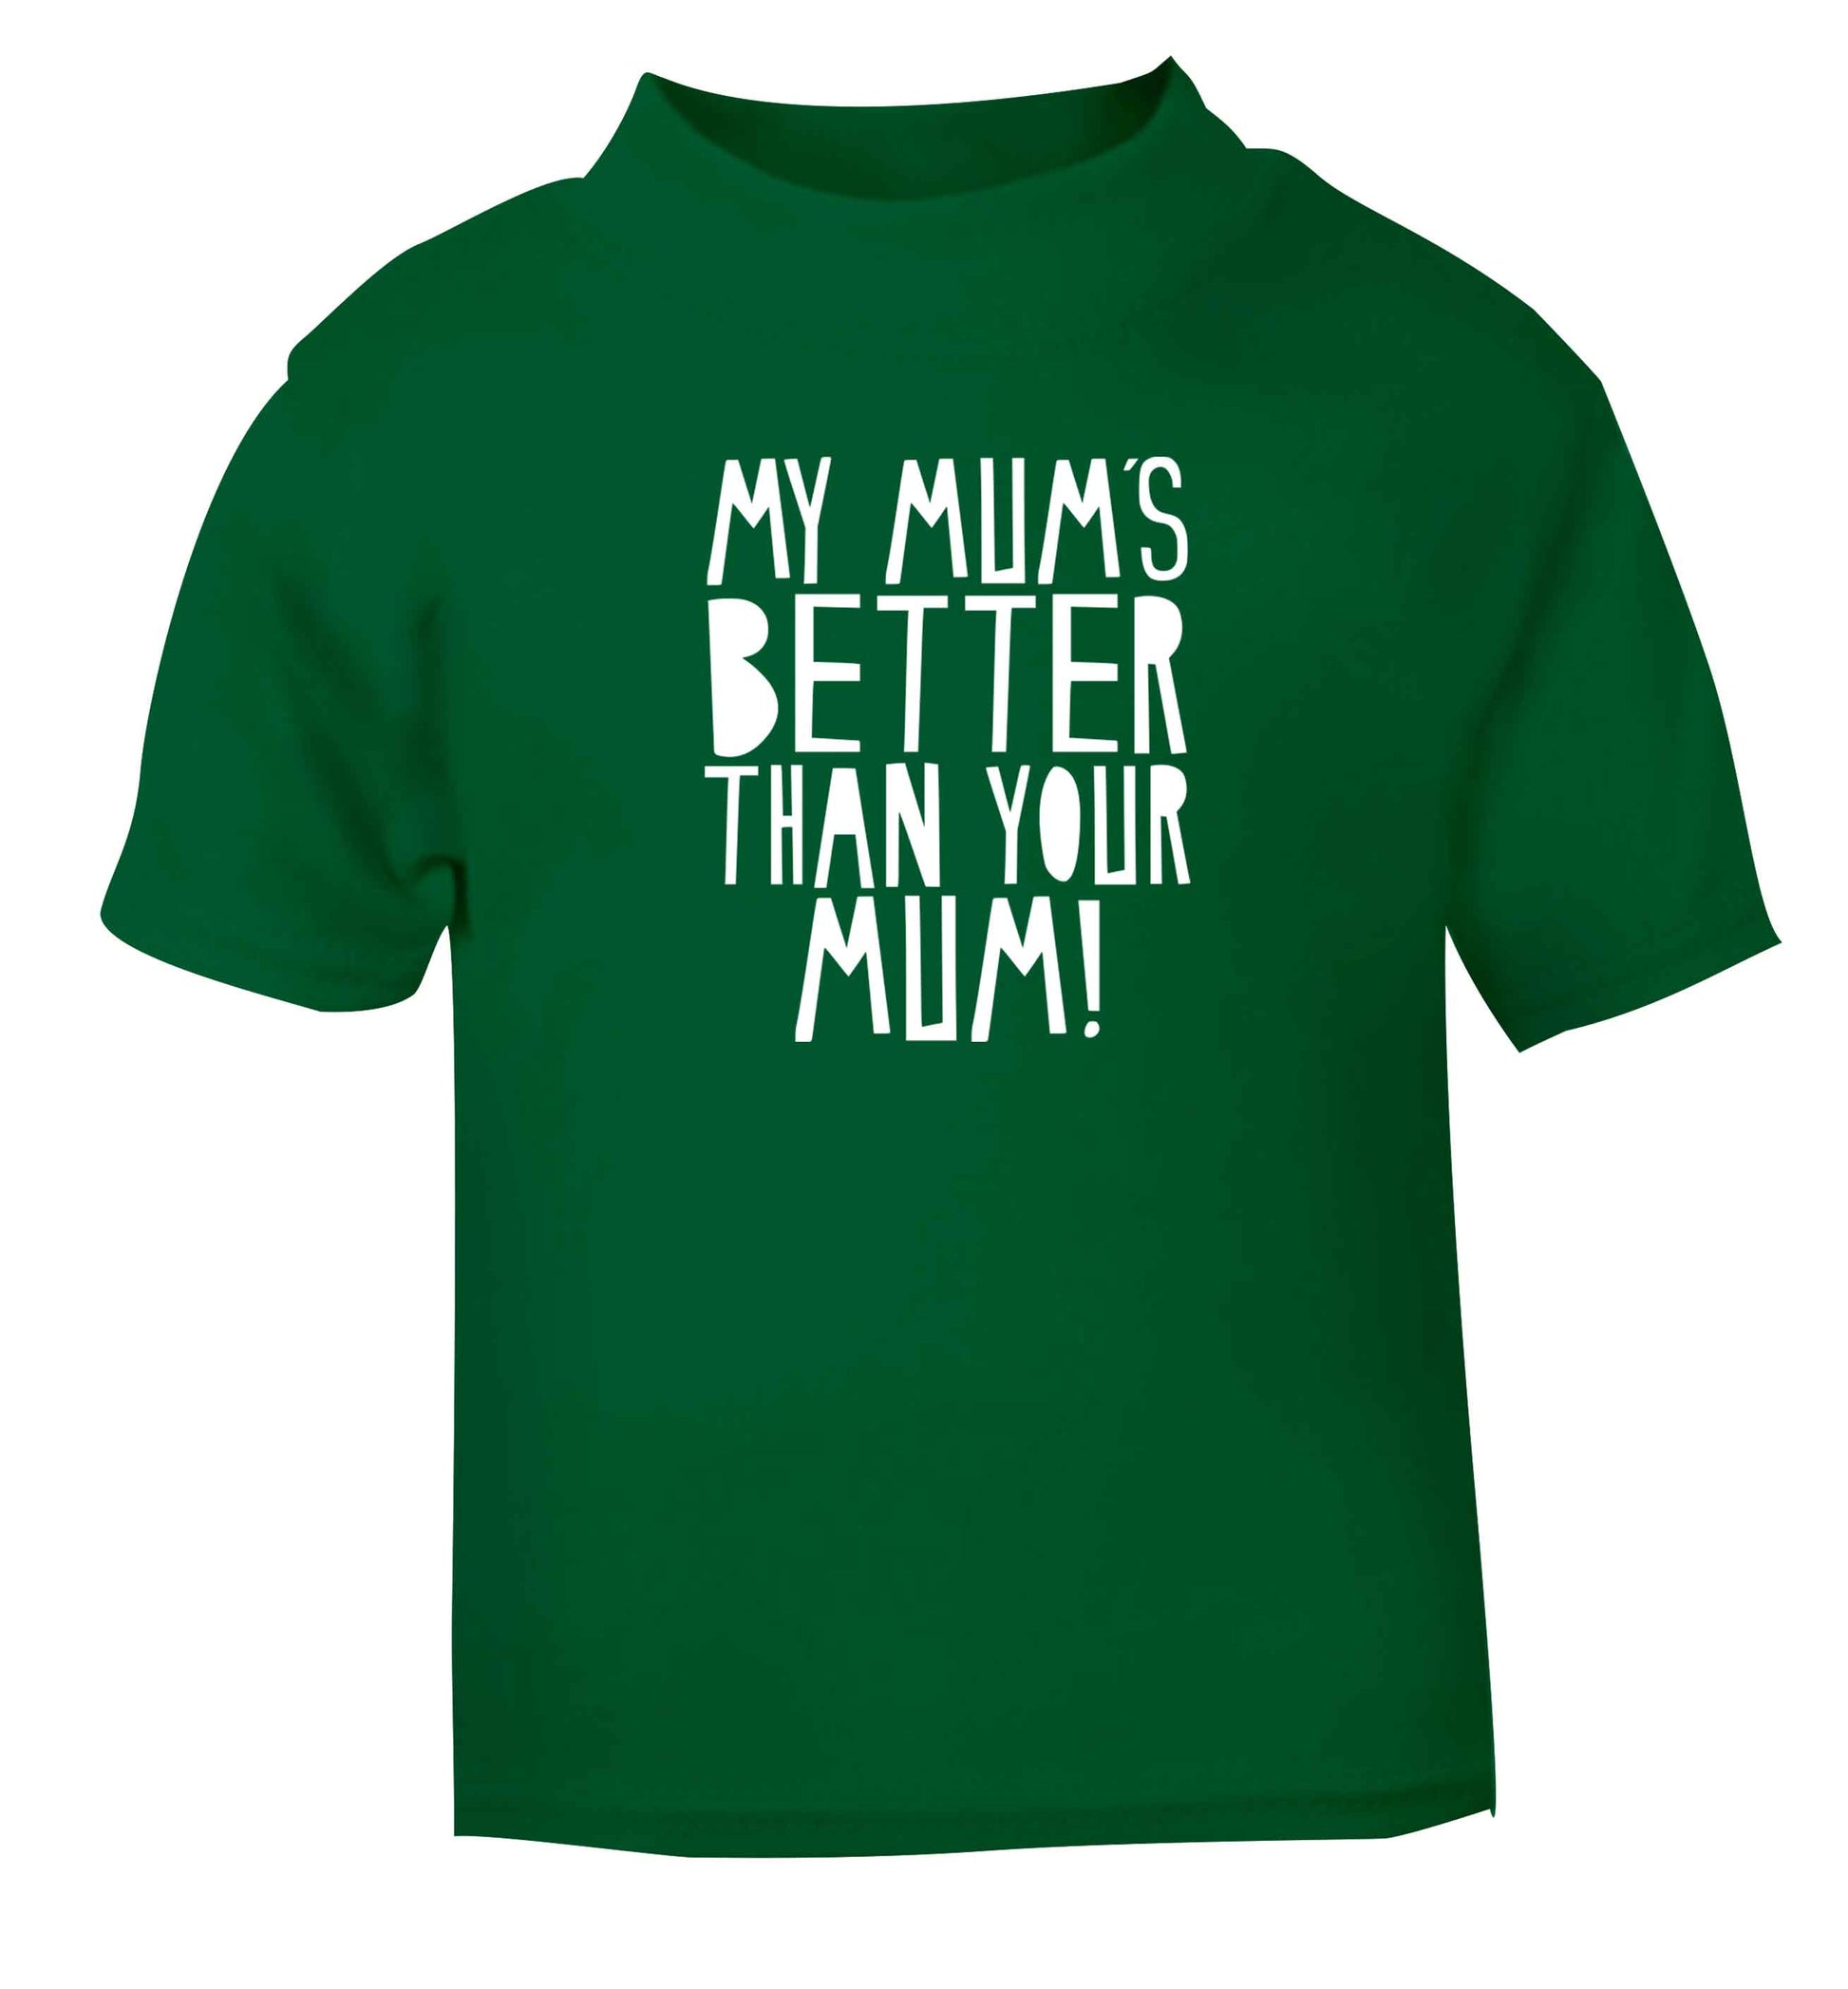 My mum's better than your mum green baby toddler Tshirt 2 Years